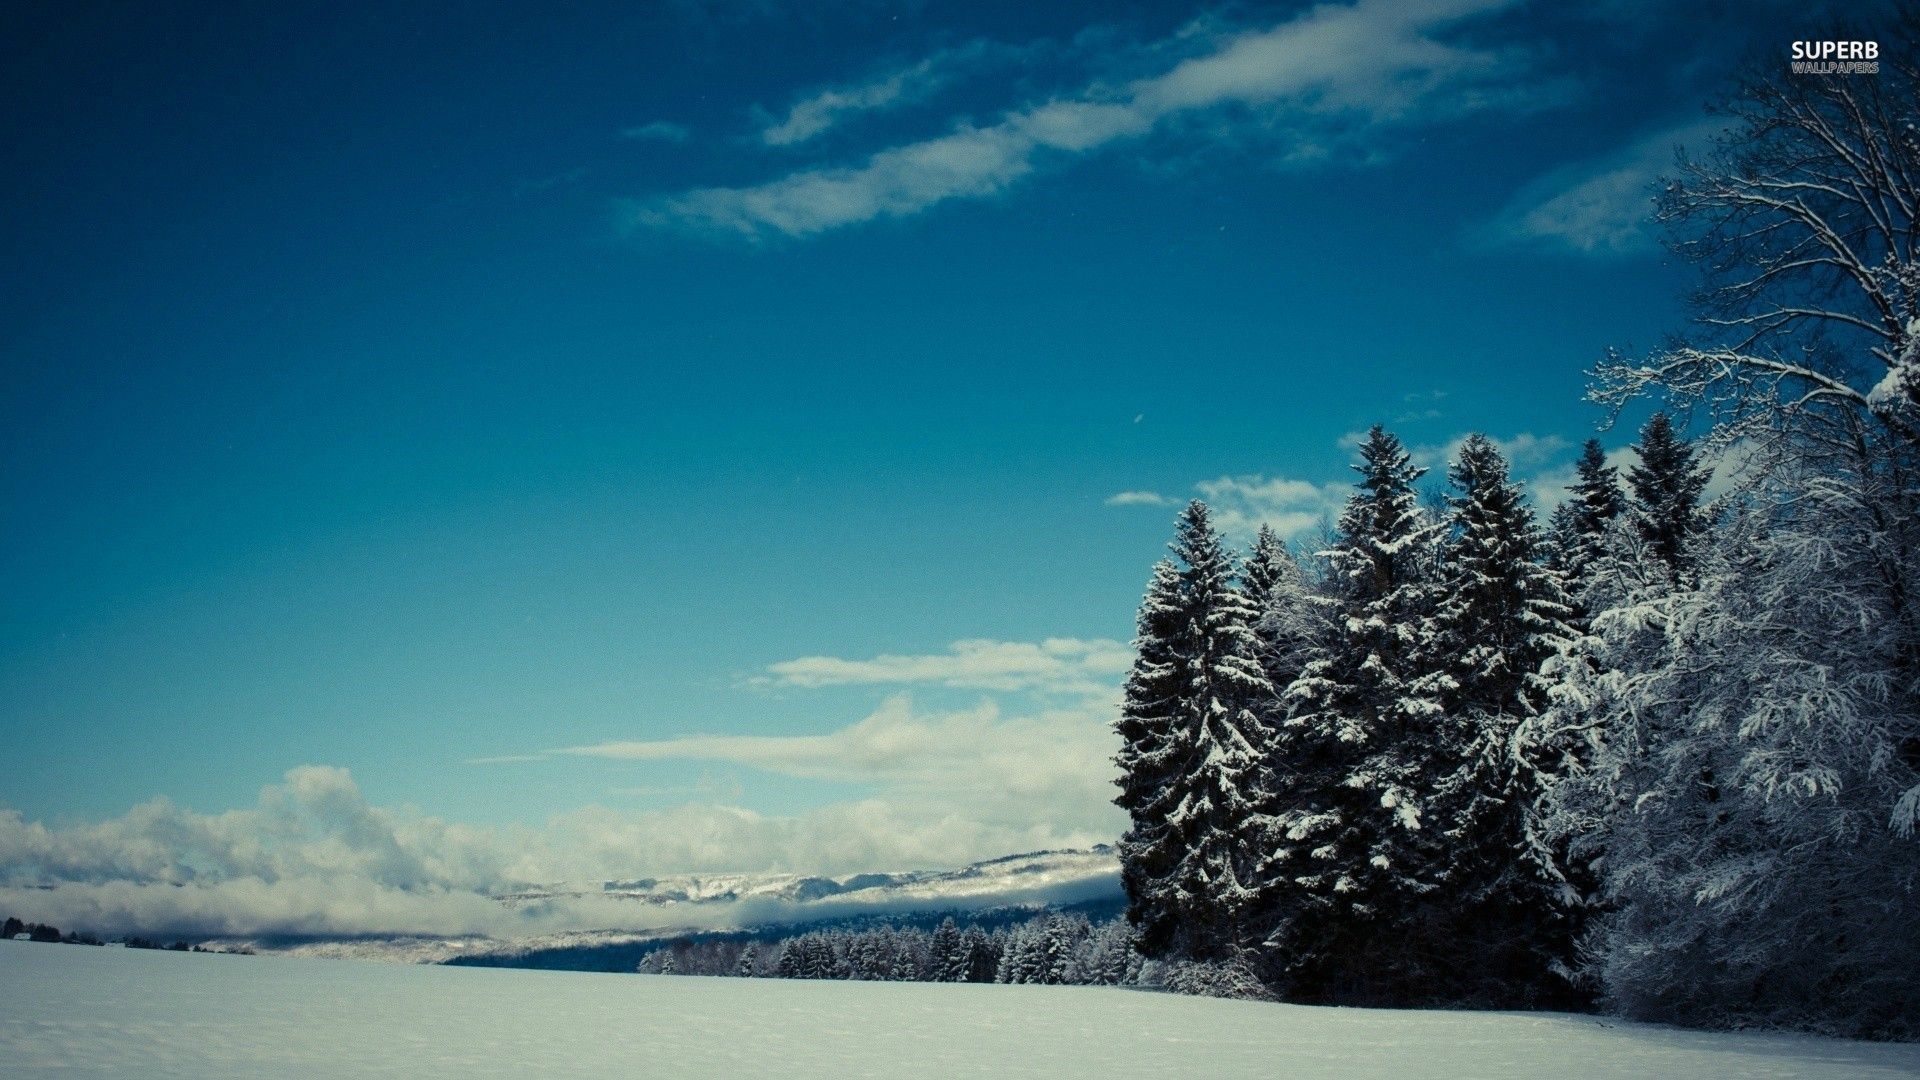 Winter Snow Scenes hd wallpaper 1080p for pc